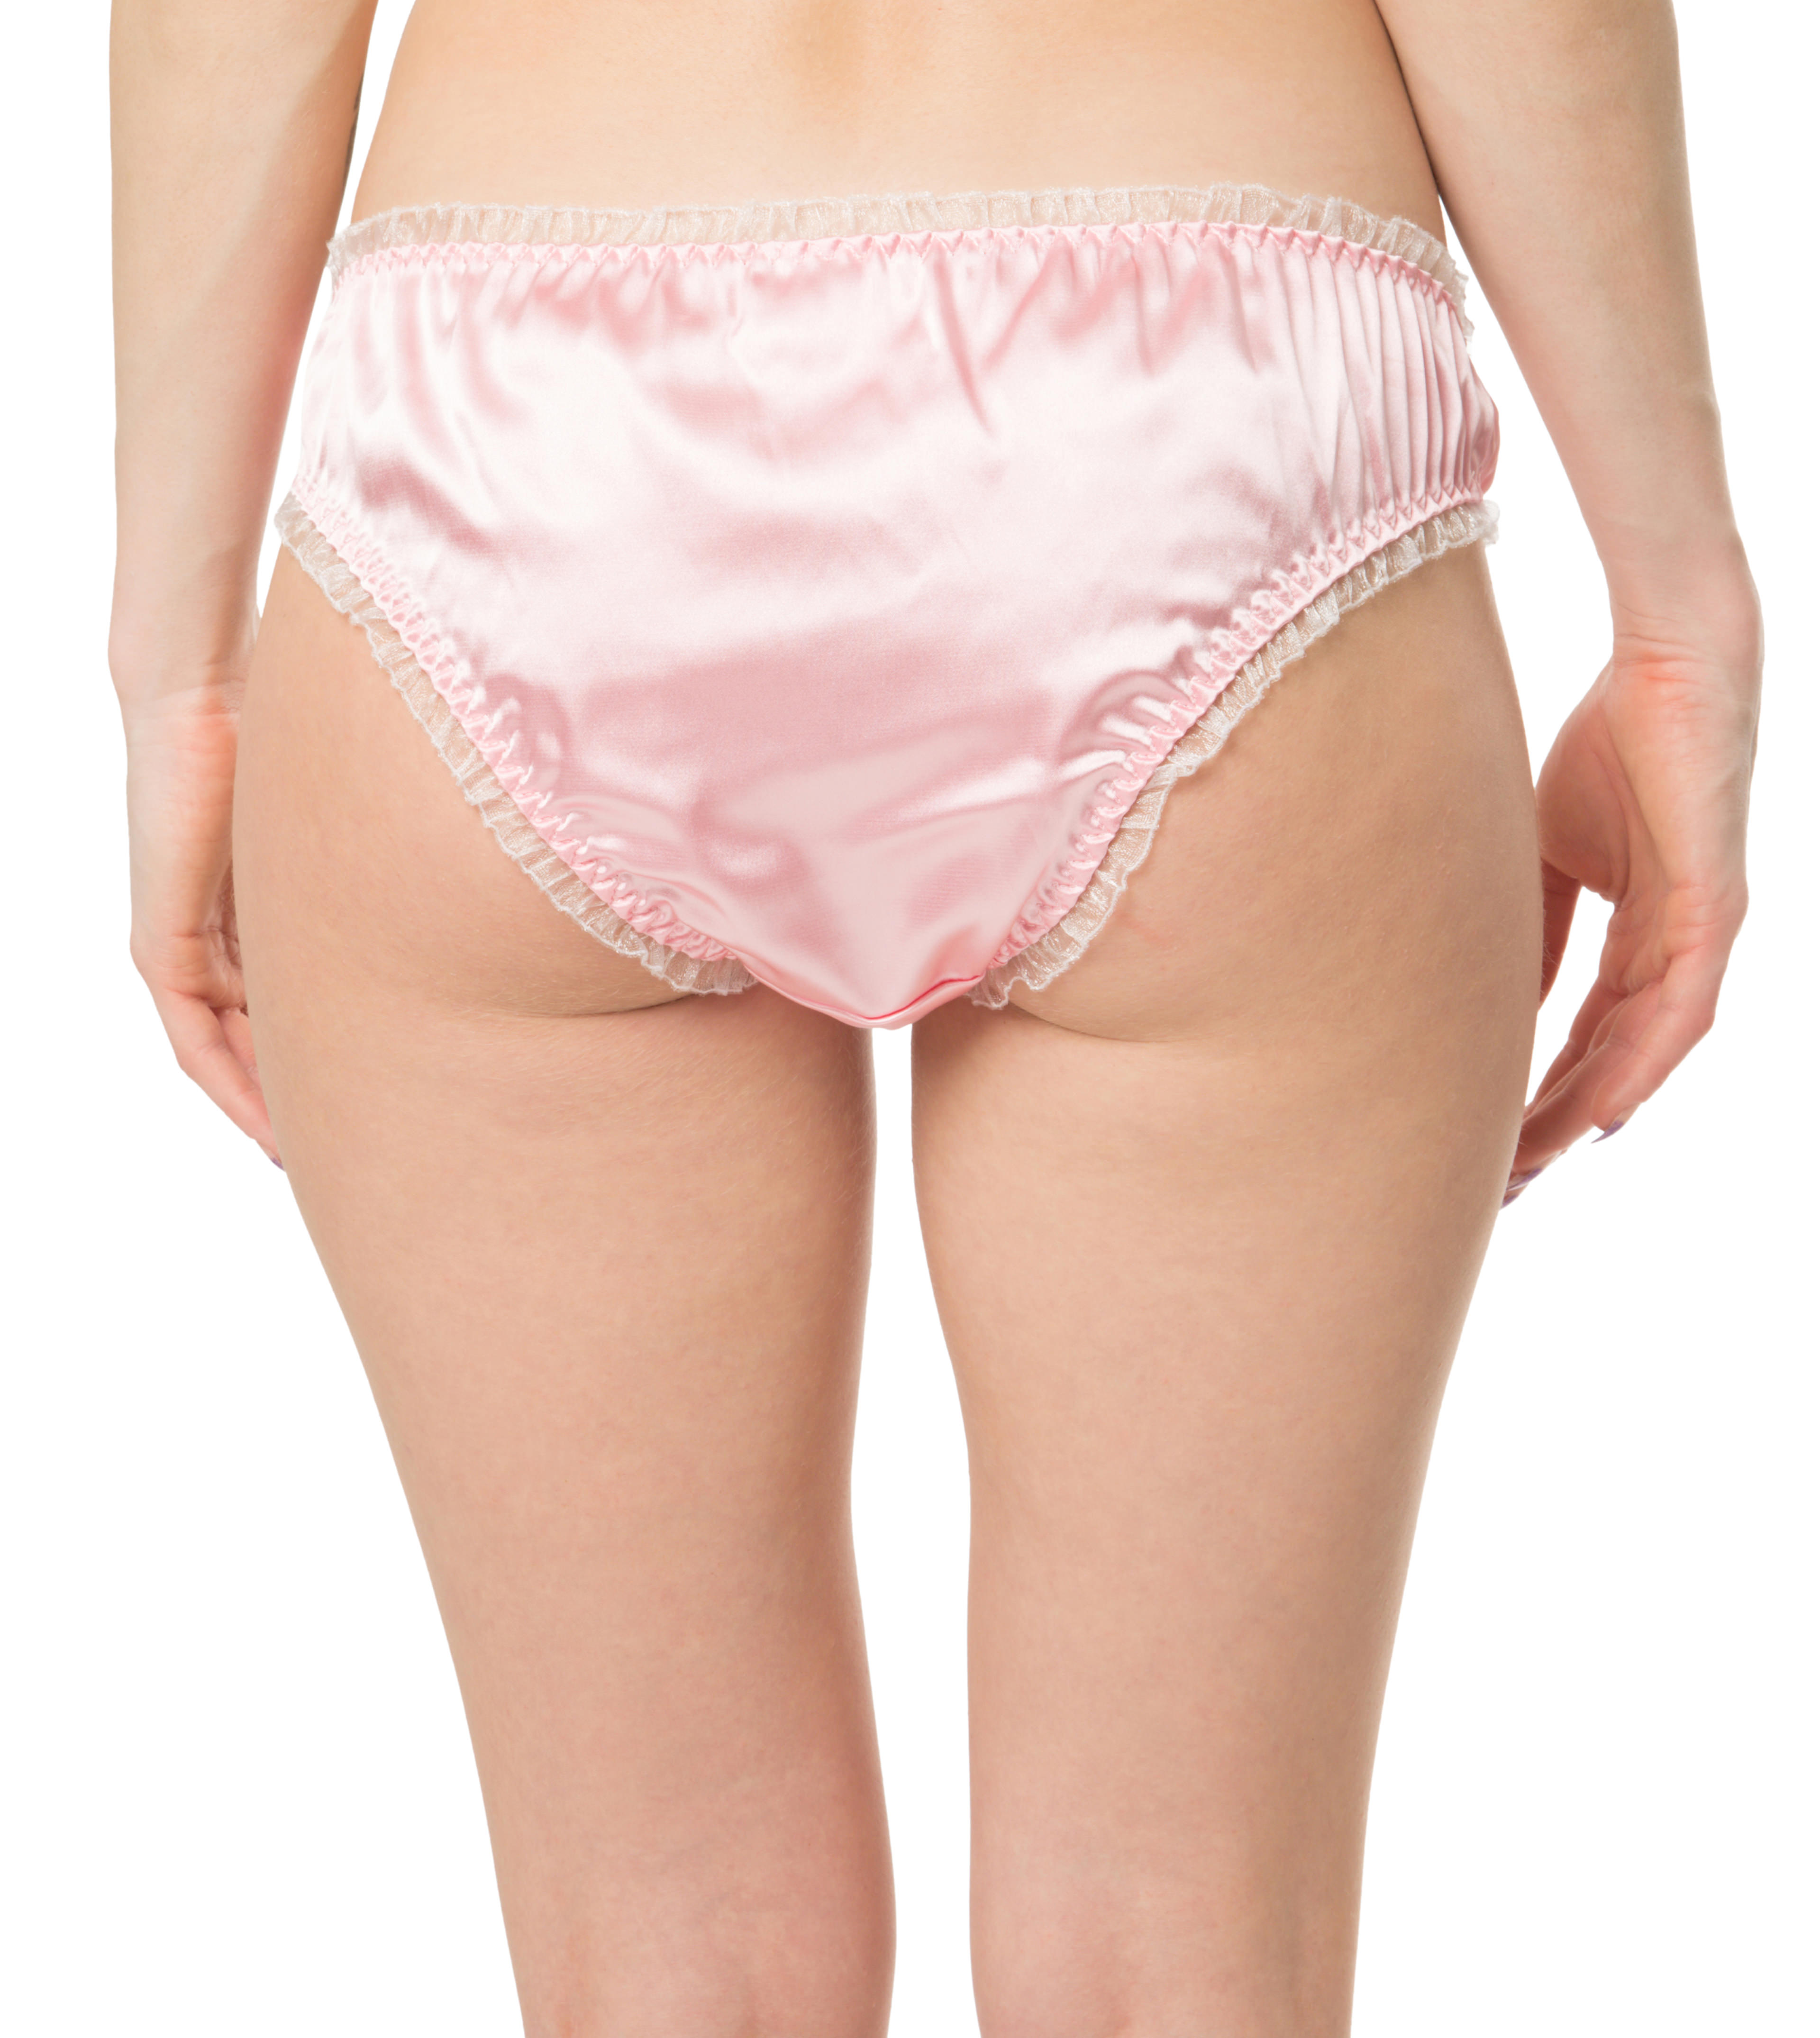 Baby Pink Satin Frilly Sissy Panties Bikini Knicker Underwear Briefs Size Ebay